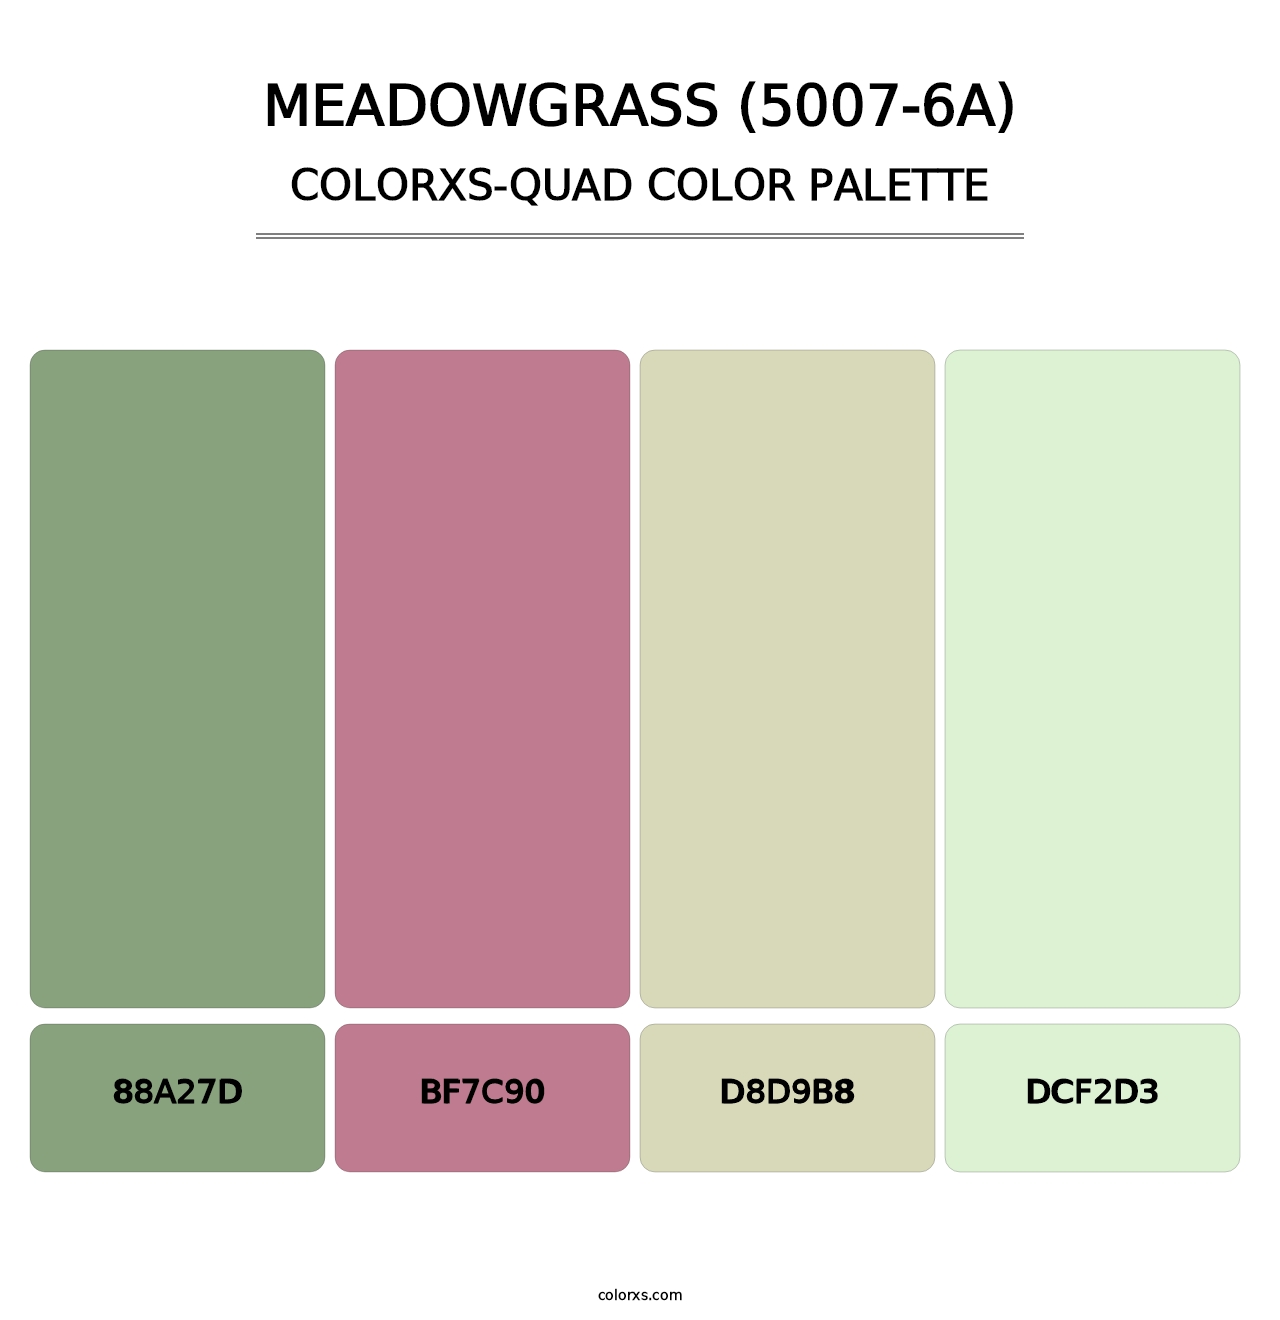 Meadowgrass (5007-6A) - Colorxs Quad Palette